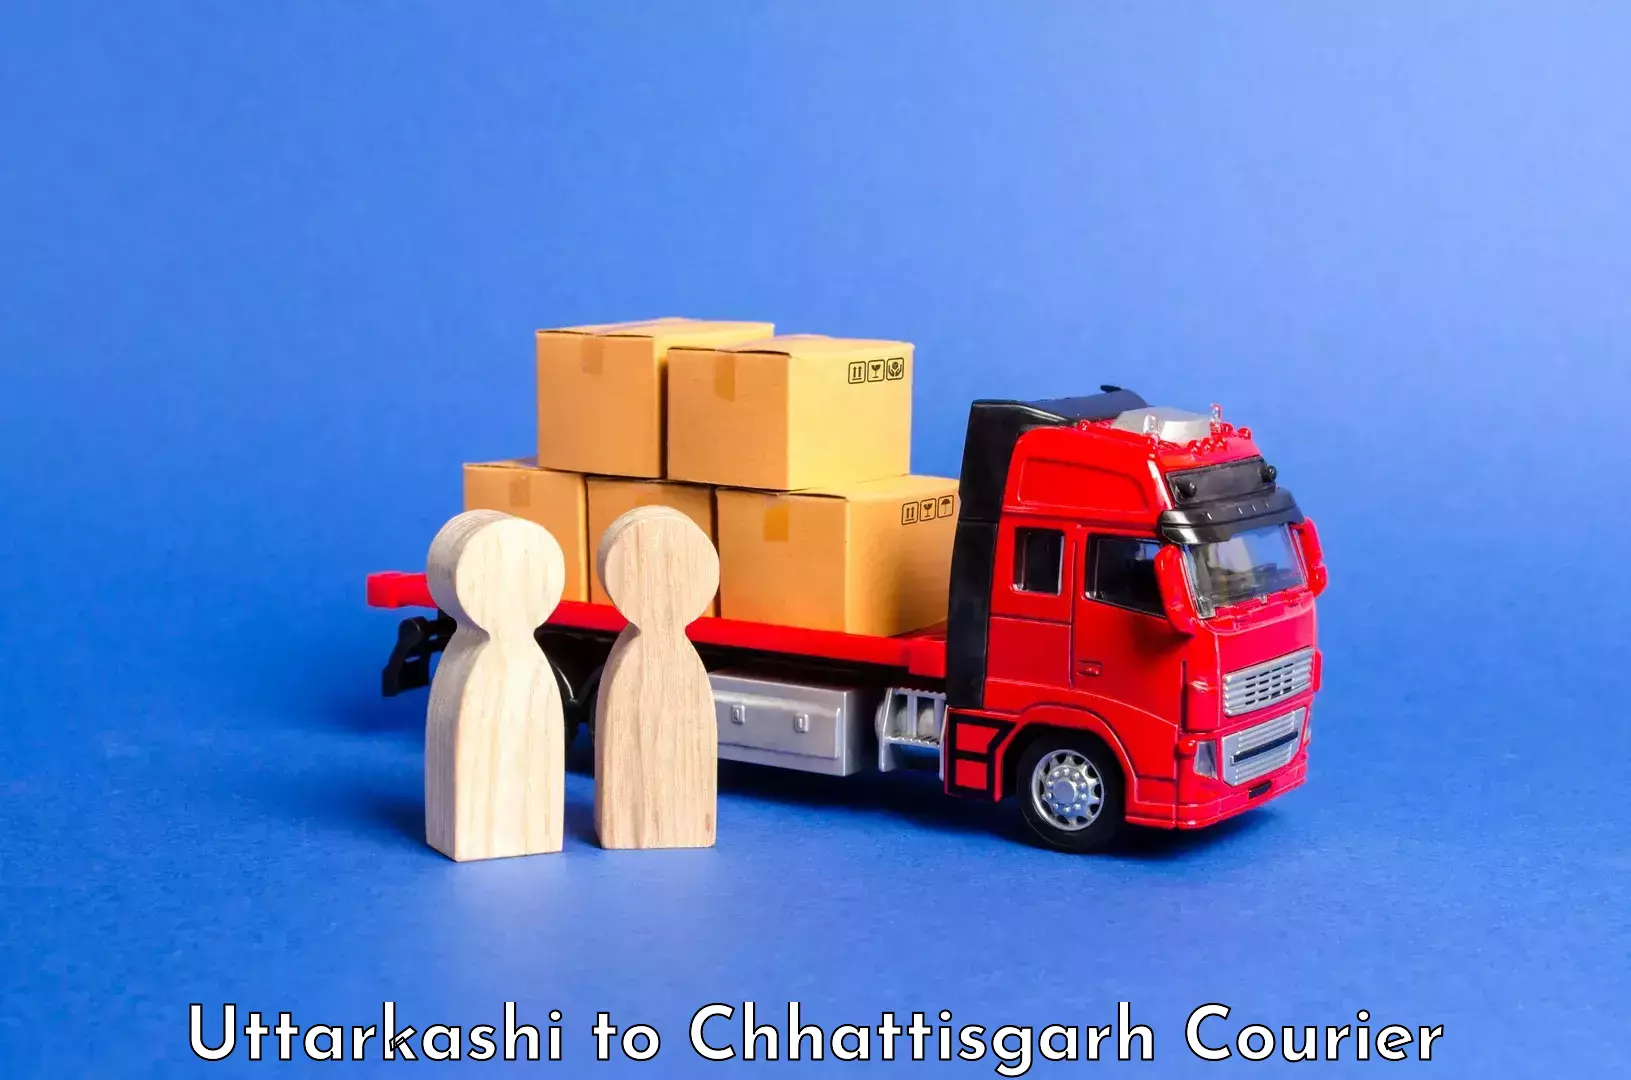 Luggage transport company Uttarkashi to Abhanpur